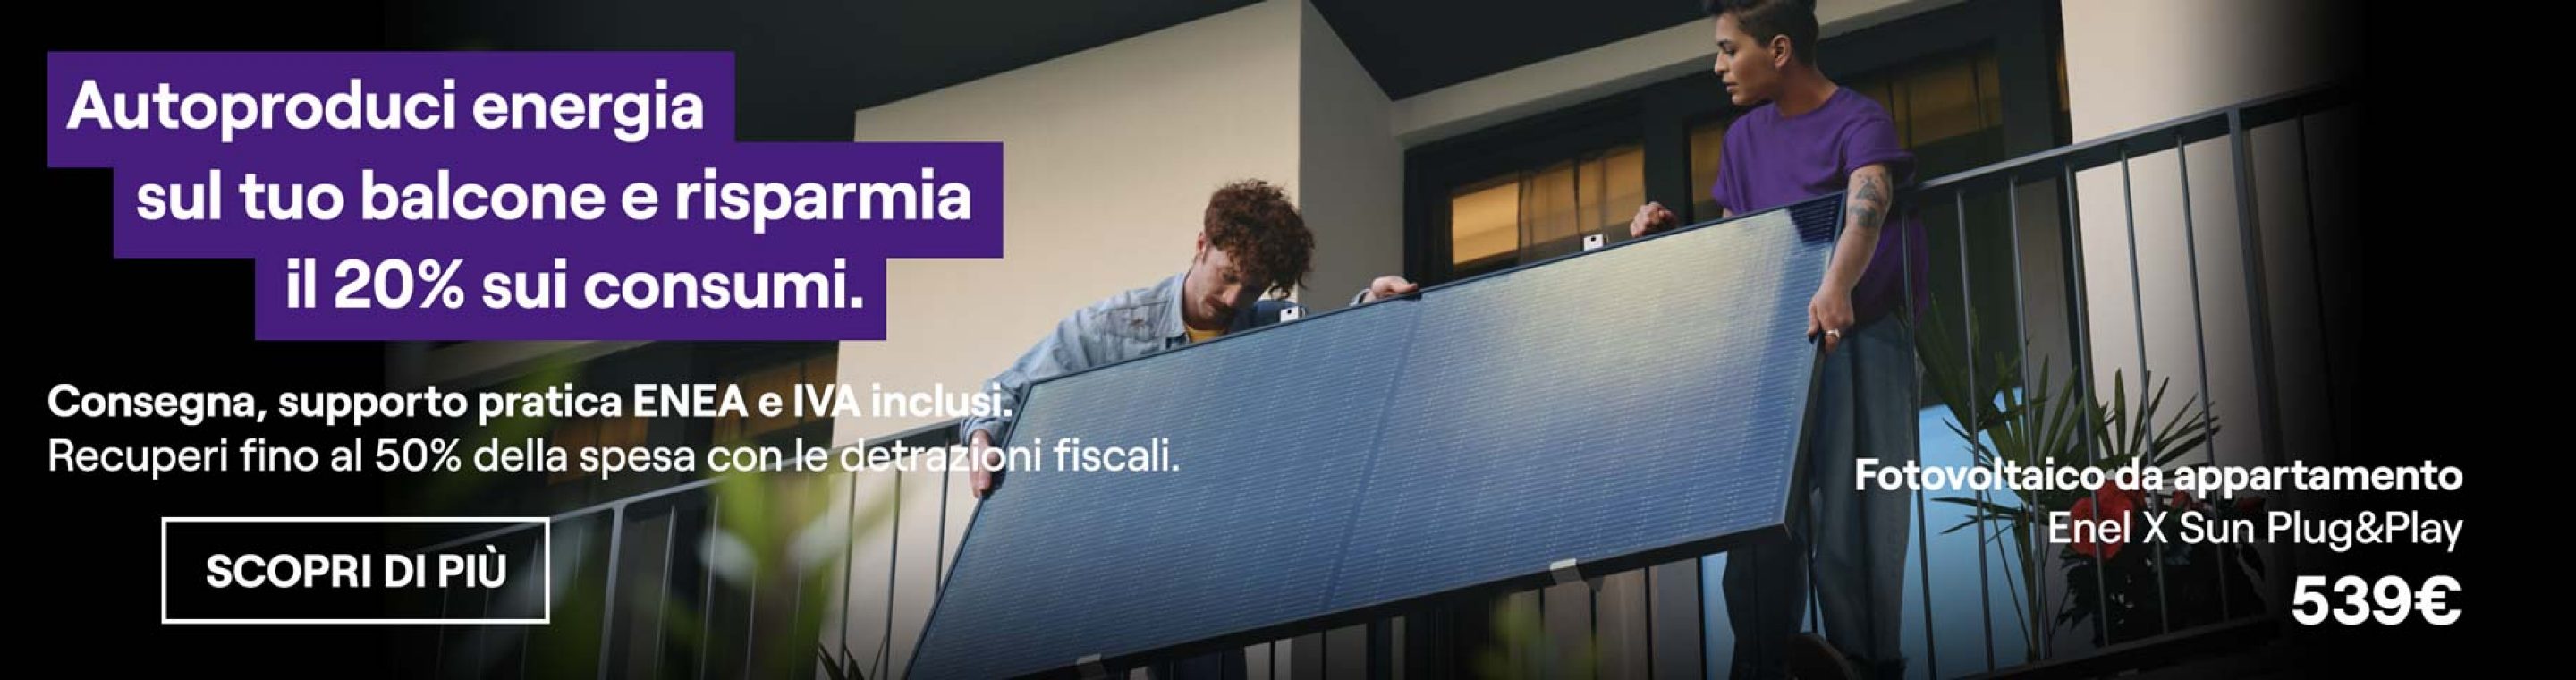 hero-fotovoltaico-appartamento-enel-x-sun-plug-play-detrazioni-fiscali-0823.jpg